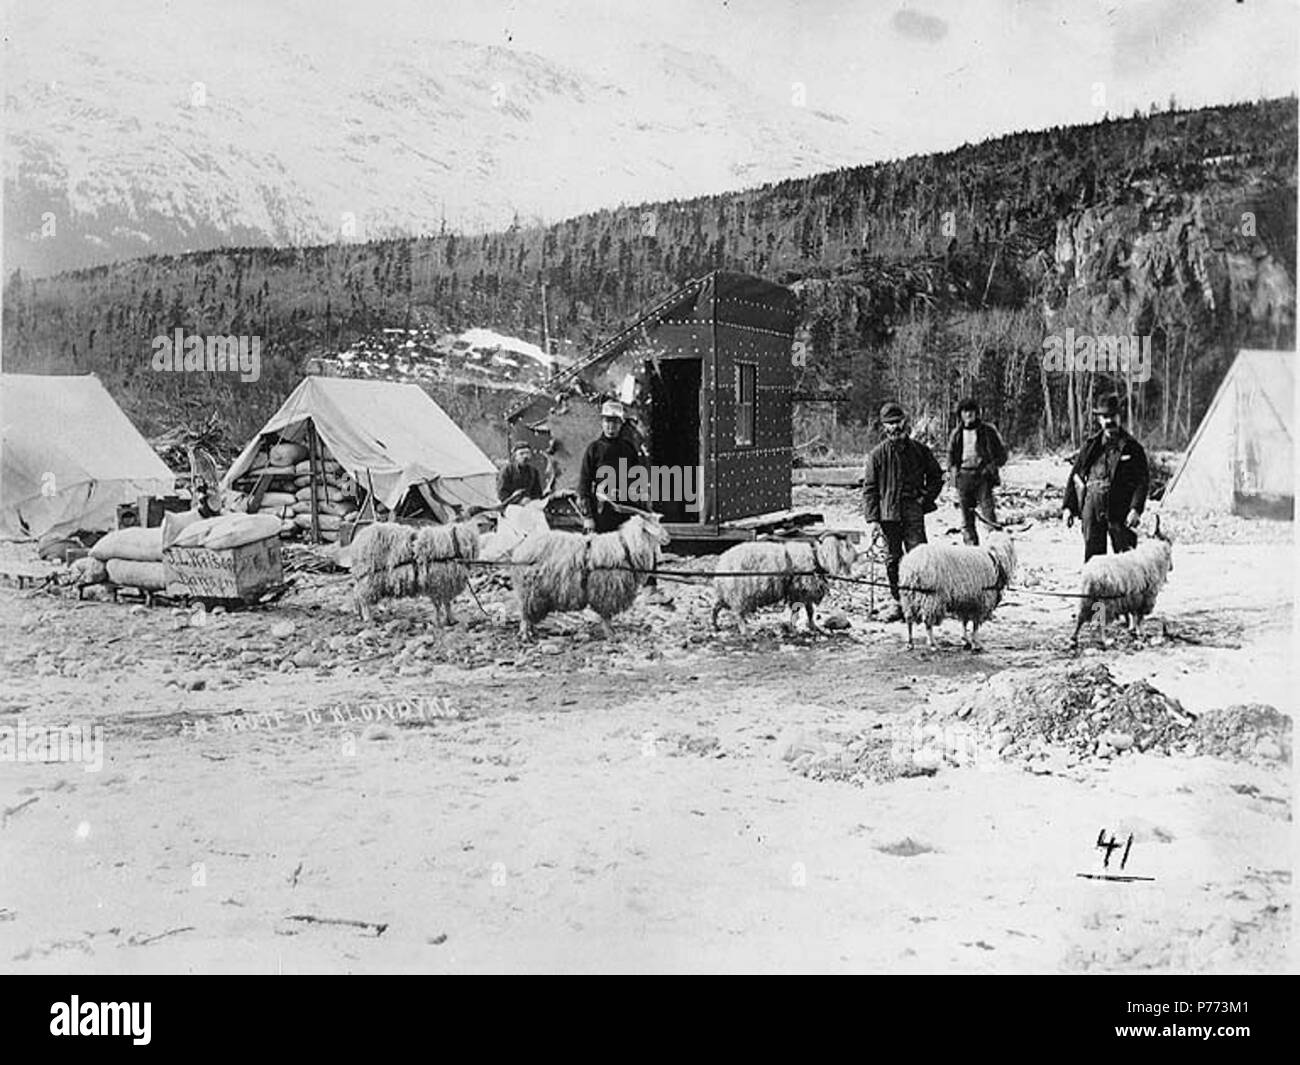 . Englisch: Klondykers mit Team von Angora-ziegen verwendet Schlitten in der Nähe von Skagway, Alaska, Frühling 1898 zu schleppen. Englisch: j.l. Wilson, Dawson, N.w.t. an der Seite des Schlitten gekennzeichnet. Bildunterschrift auf das Bild: "Auf dem Weg zum Klondike' Nr. 41 in der unteren rechten Ecke angezeigt wird. Klondike Gold Rush. Themen (LCTGM): Schlitten - - Alaska - Skagway; Zelte - Alaska - Skagway; Schuppen - Alaska - Skagway Themen (LCSH): angoraziege - Alaska - Skagway. 1898 7 Klondykers mit Team von Angora-ziegen verwendet Schlitten zu schleppen in der Nähe von Skagway, Alaska, Frühling 1898 (HEGG 262) Stockfoto